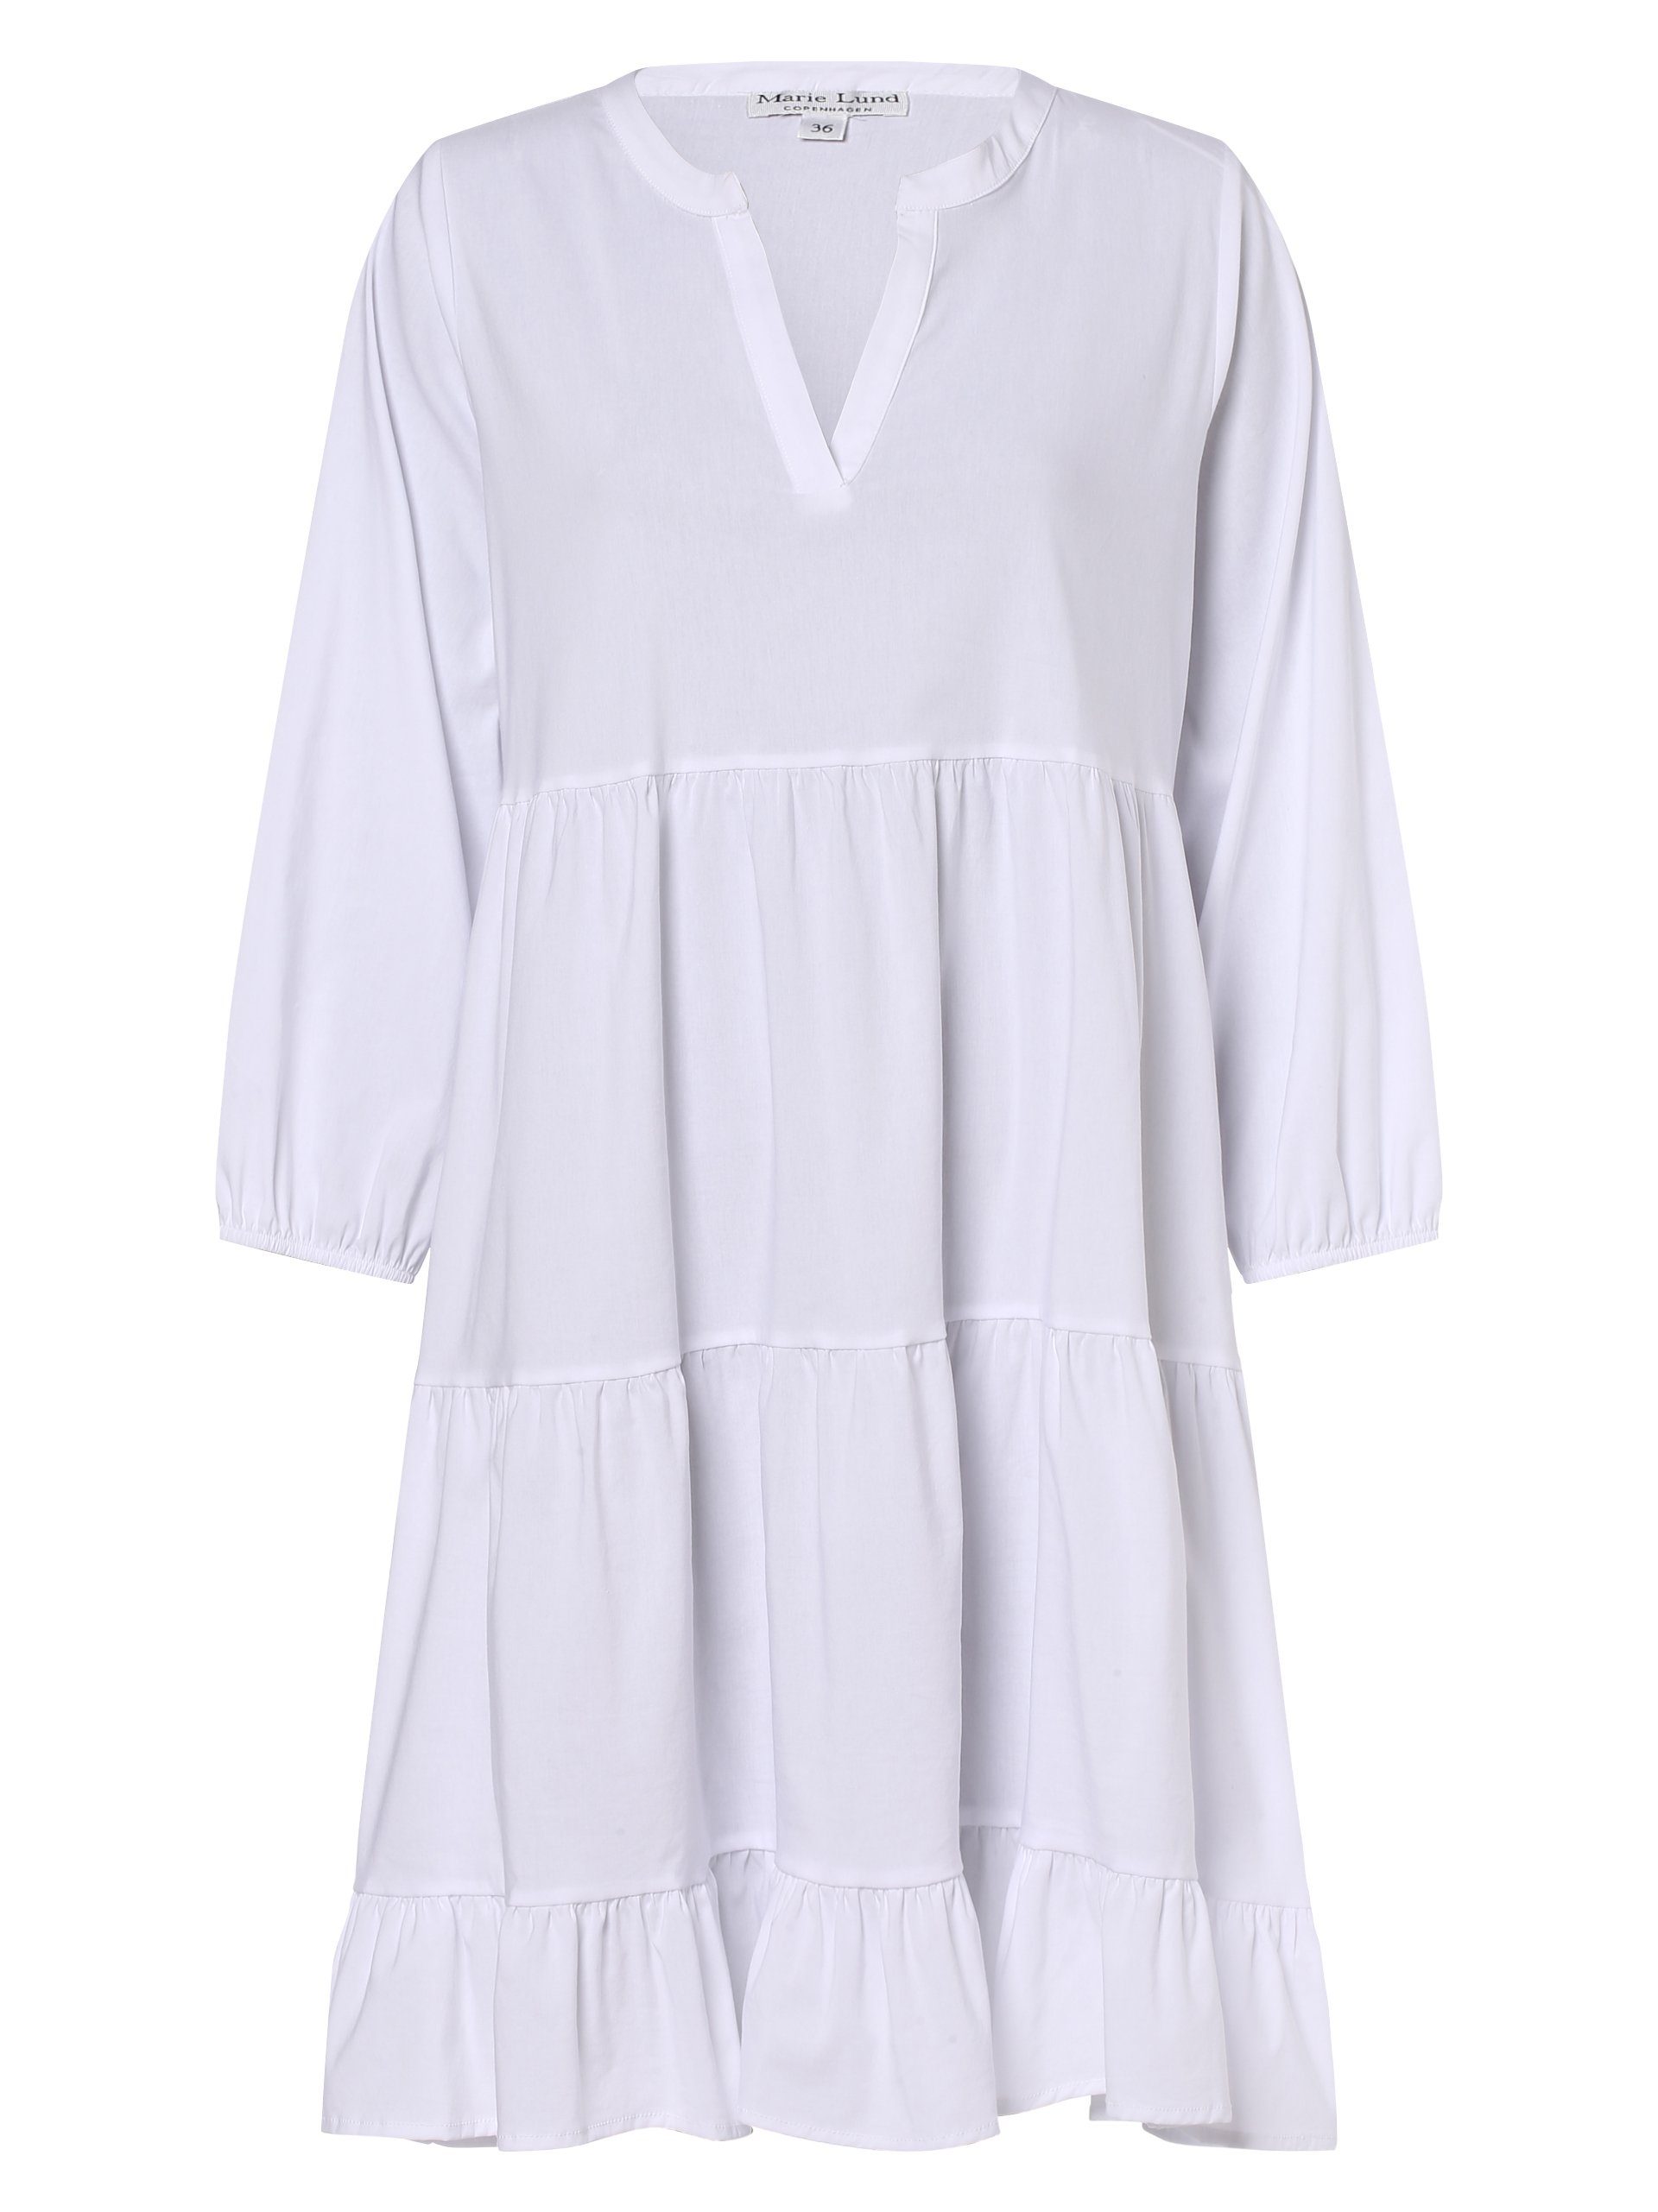 Marie Lund A-Linien-Kleid weiß